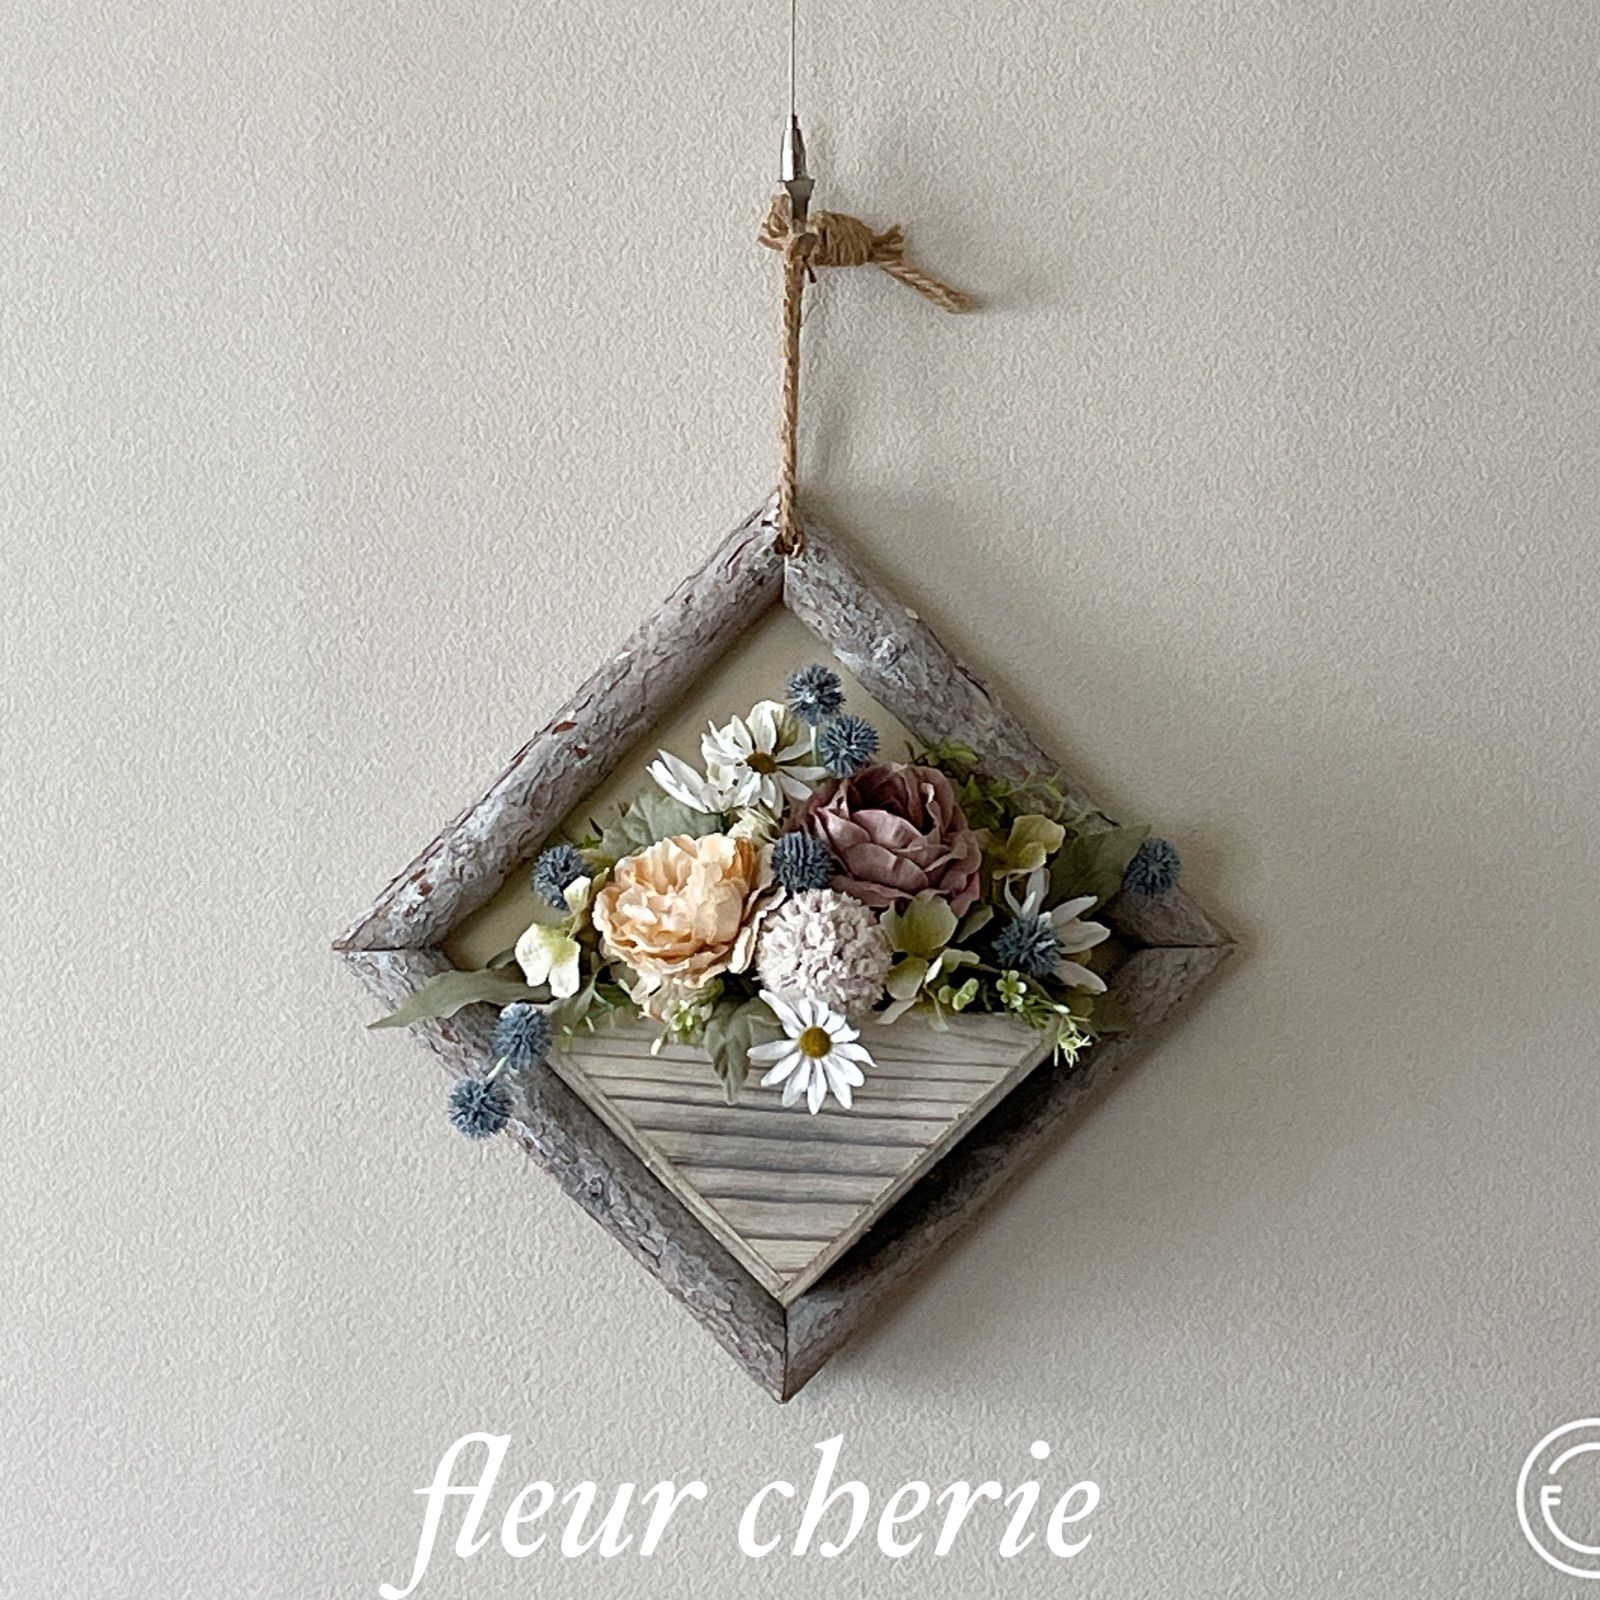 アートフラワー白樺木製フレーム壁掛けアレンジリースアーティフィシャル造花プリザ - メルカリ